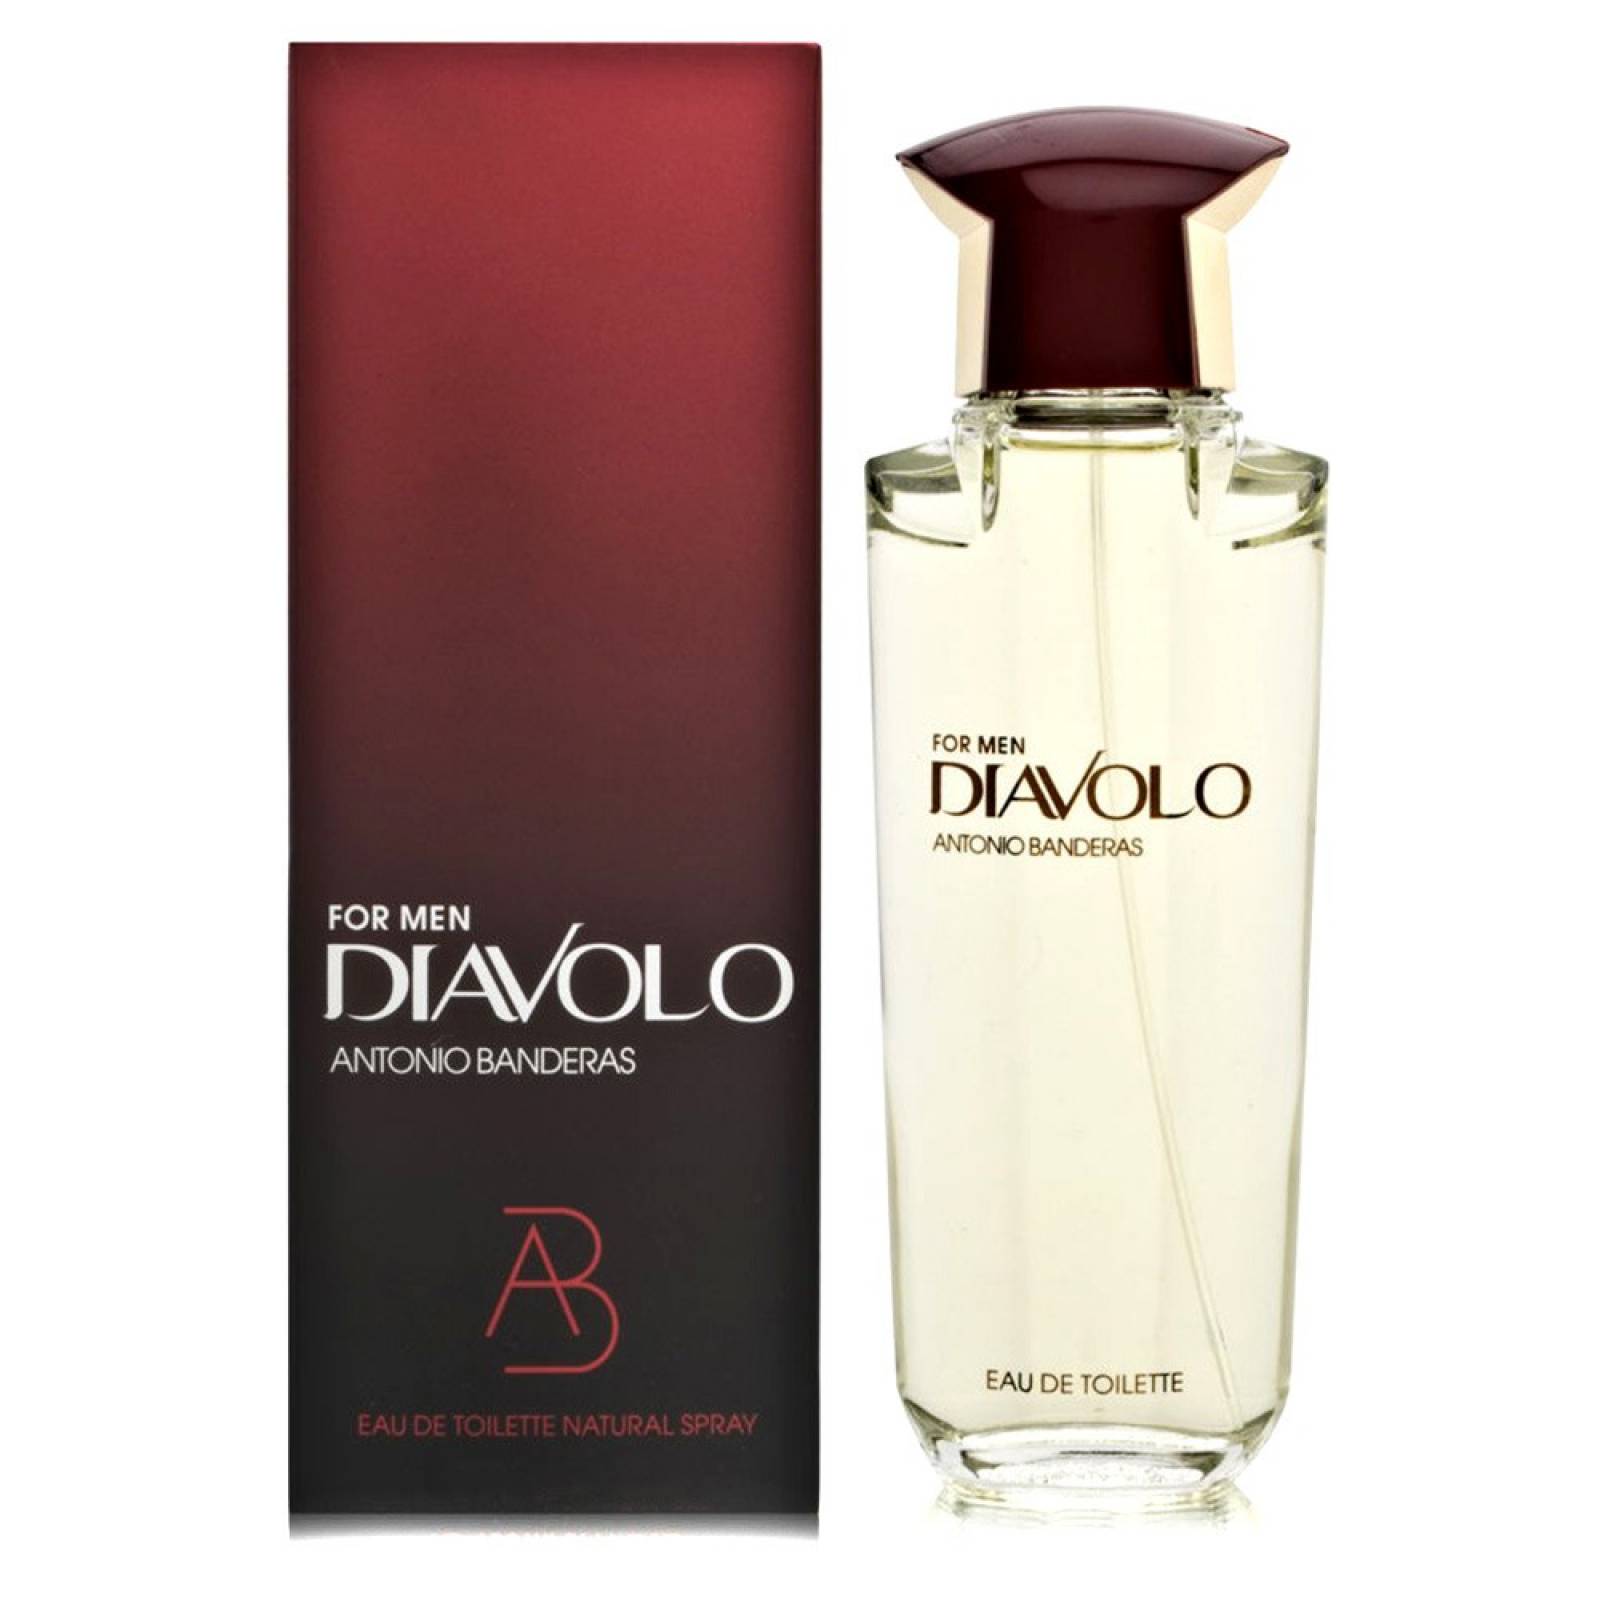 Diavolo For Men 100 ml Eau de Toilette Spray de Antonio Banderas